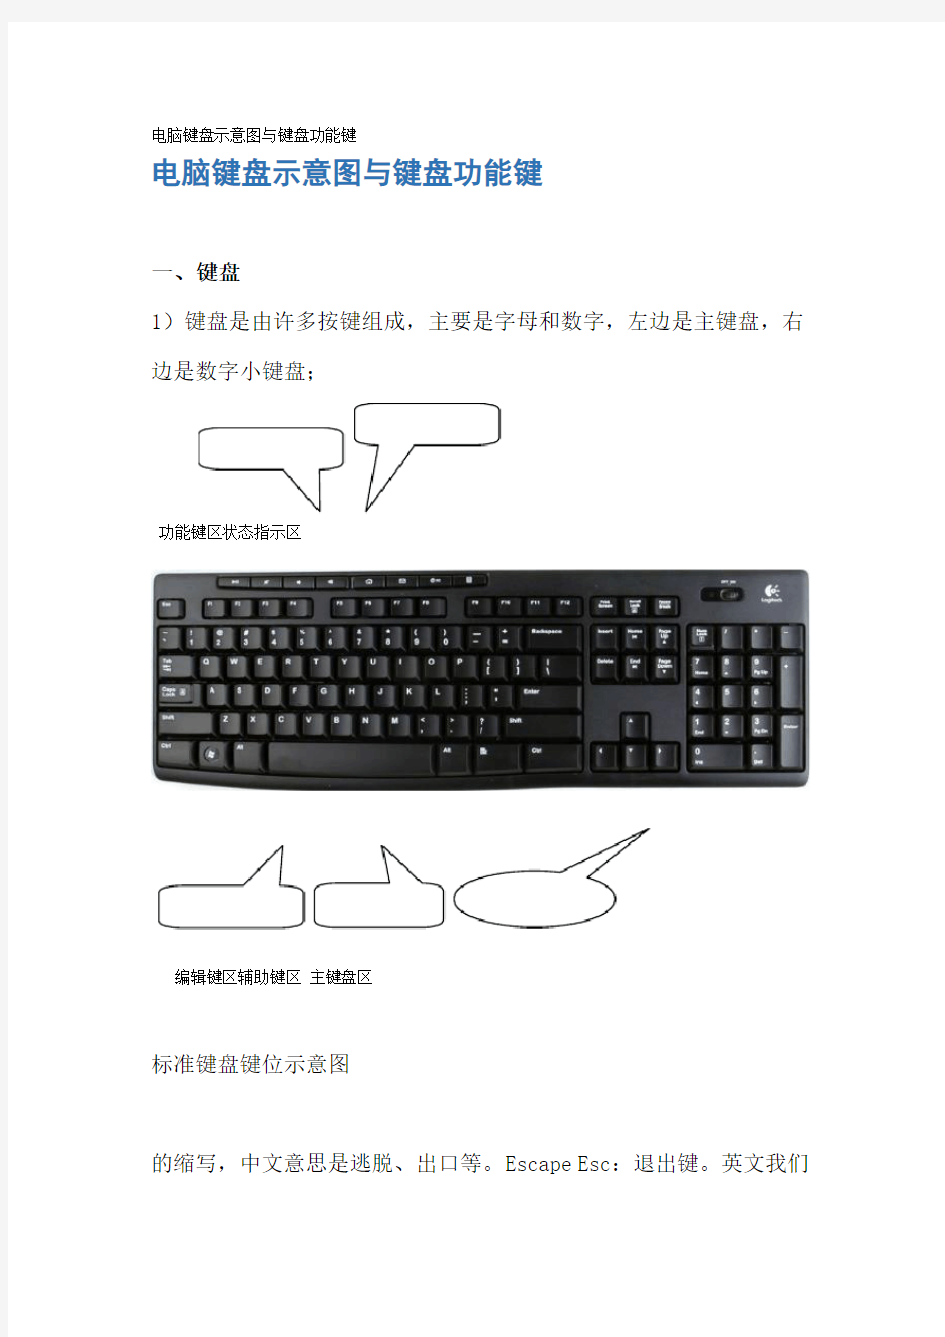 电脑键盘示意图与键盘功能键